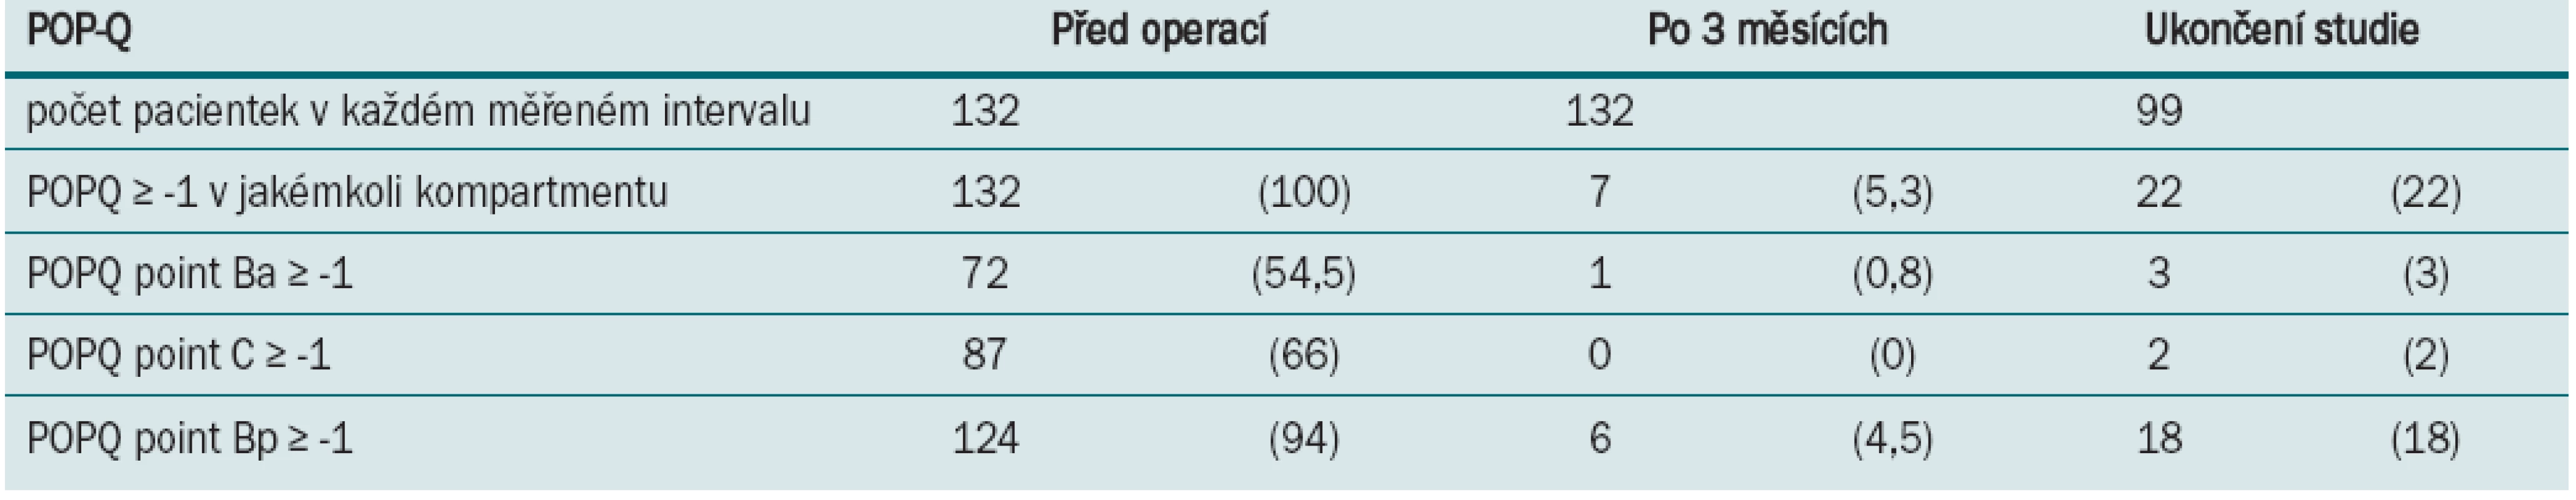 Anatomické parametry naměřené před operací, 3 měsíce po operaci a při ukončení studie: v prospektivní studii 132 LSC [48].